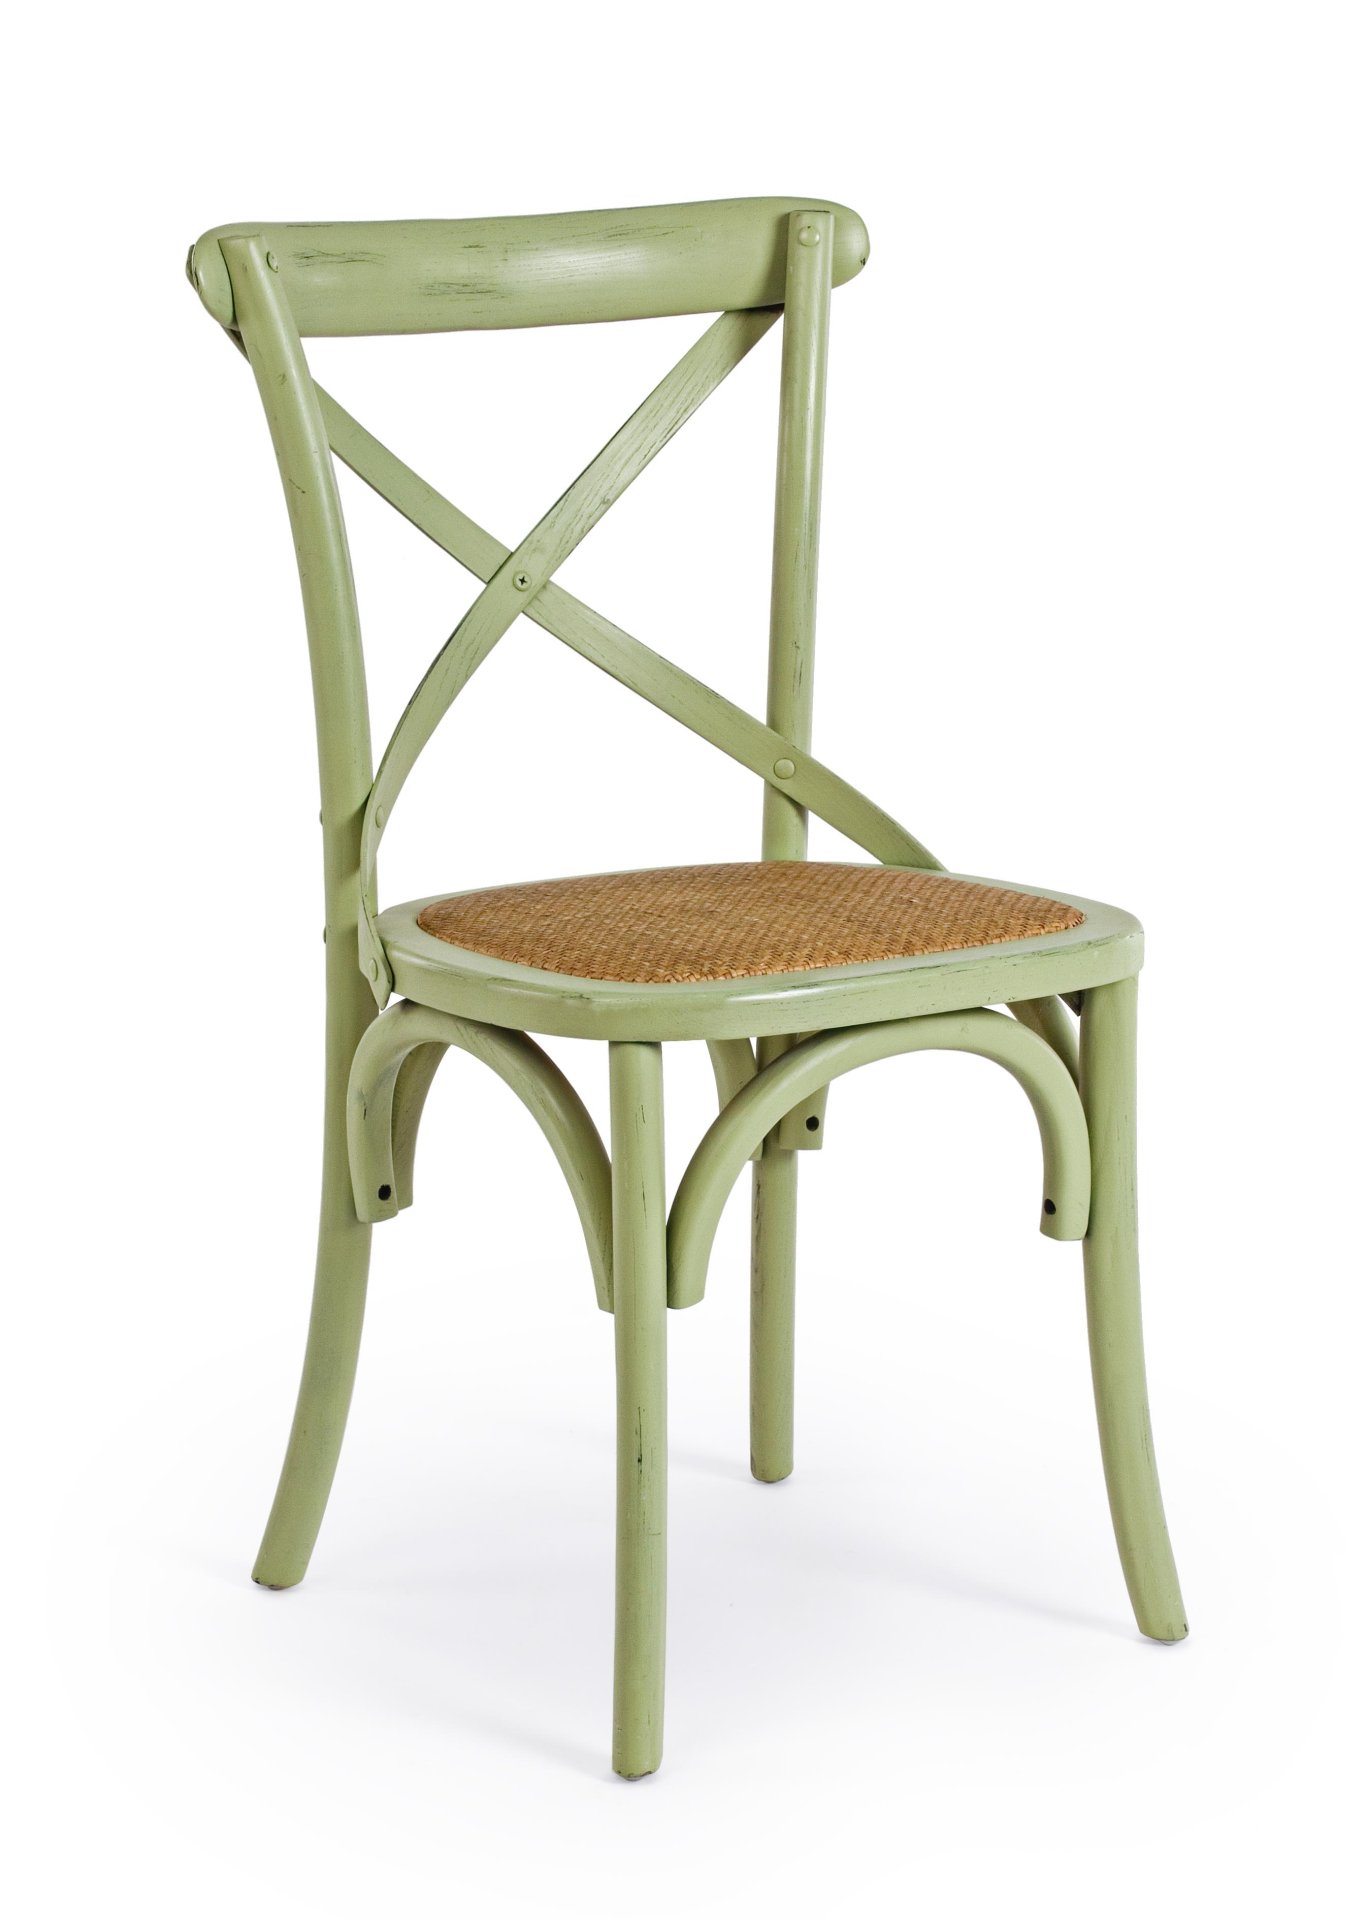 Der Stuhl Cross überzeugt mit seinem klassischen Design. Gefertigt wurde der Stuhl aus Ulmenholz, welches einen grünen Farbton besitzt. Die Sitz- und Rückenfläche ist aus Rattan gefertigt. Die Sitzhöhe beträgt 46 cm.